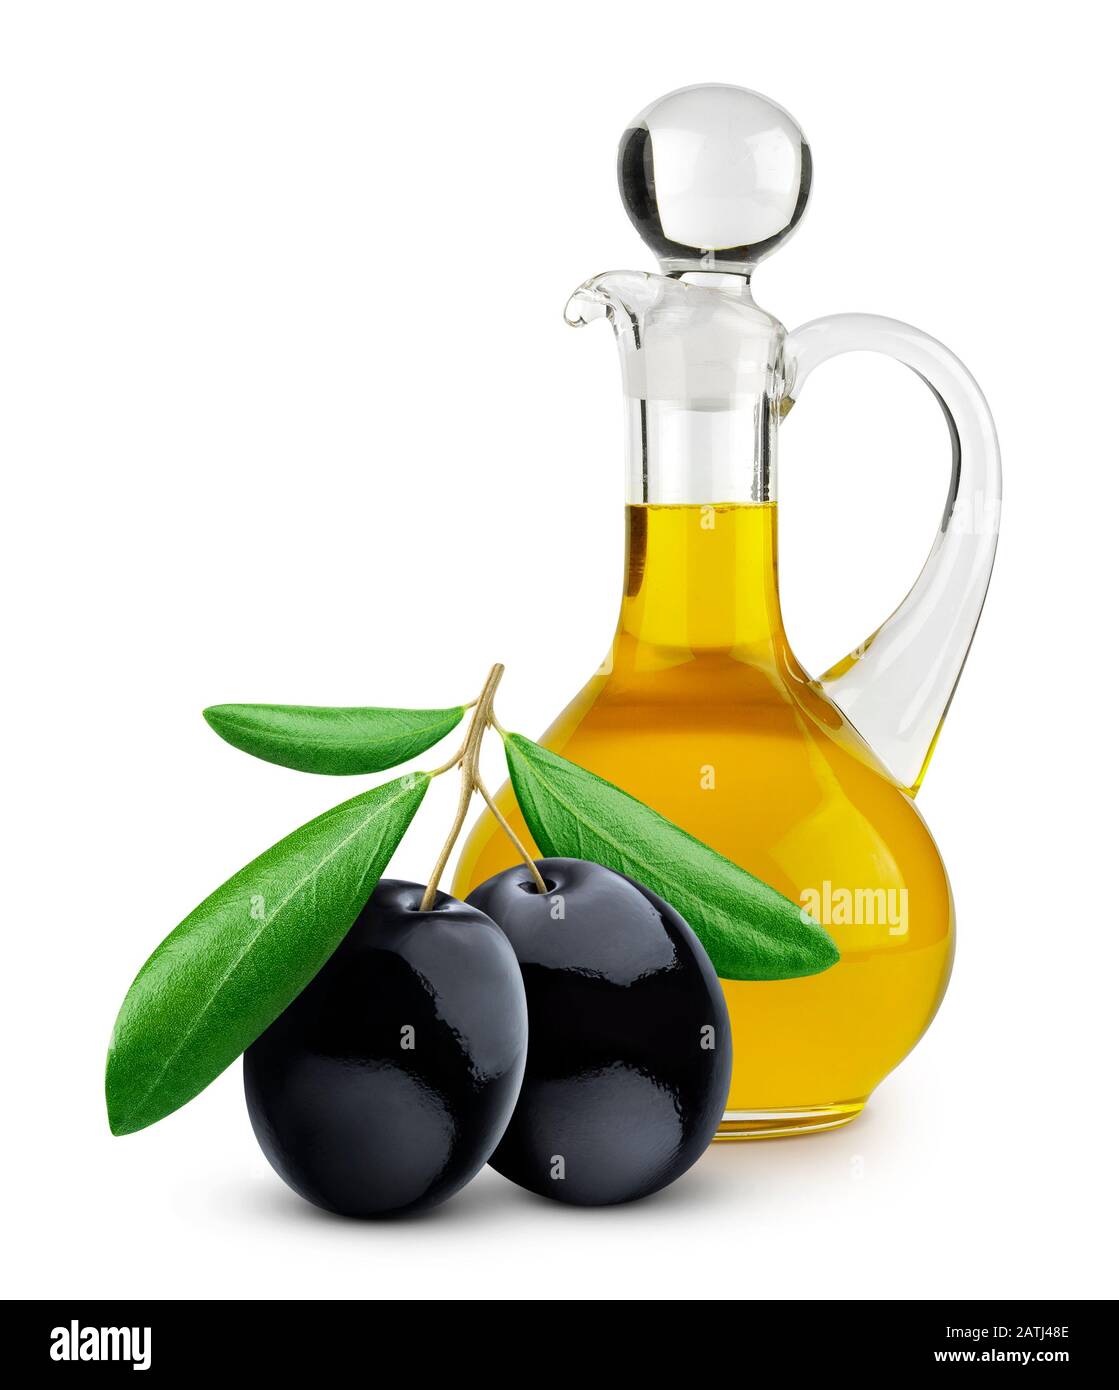 Botella de aceite de oliva virgen extra y aceitunas negras aisladas sobre fondo blanco Foto de stock